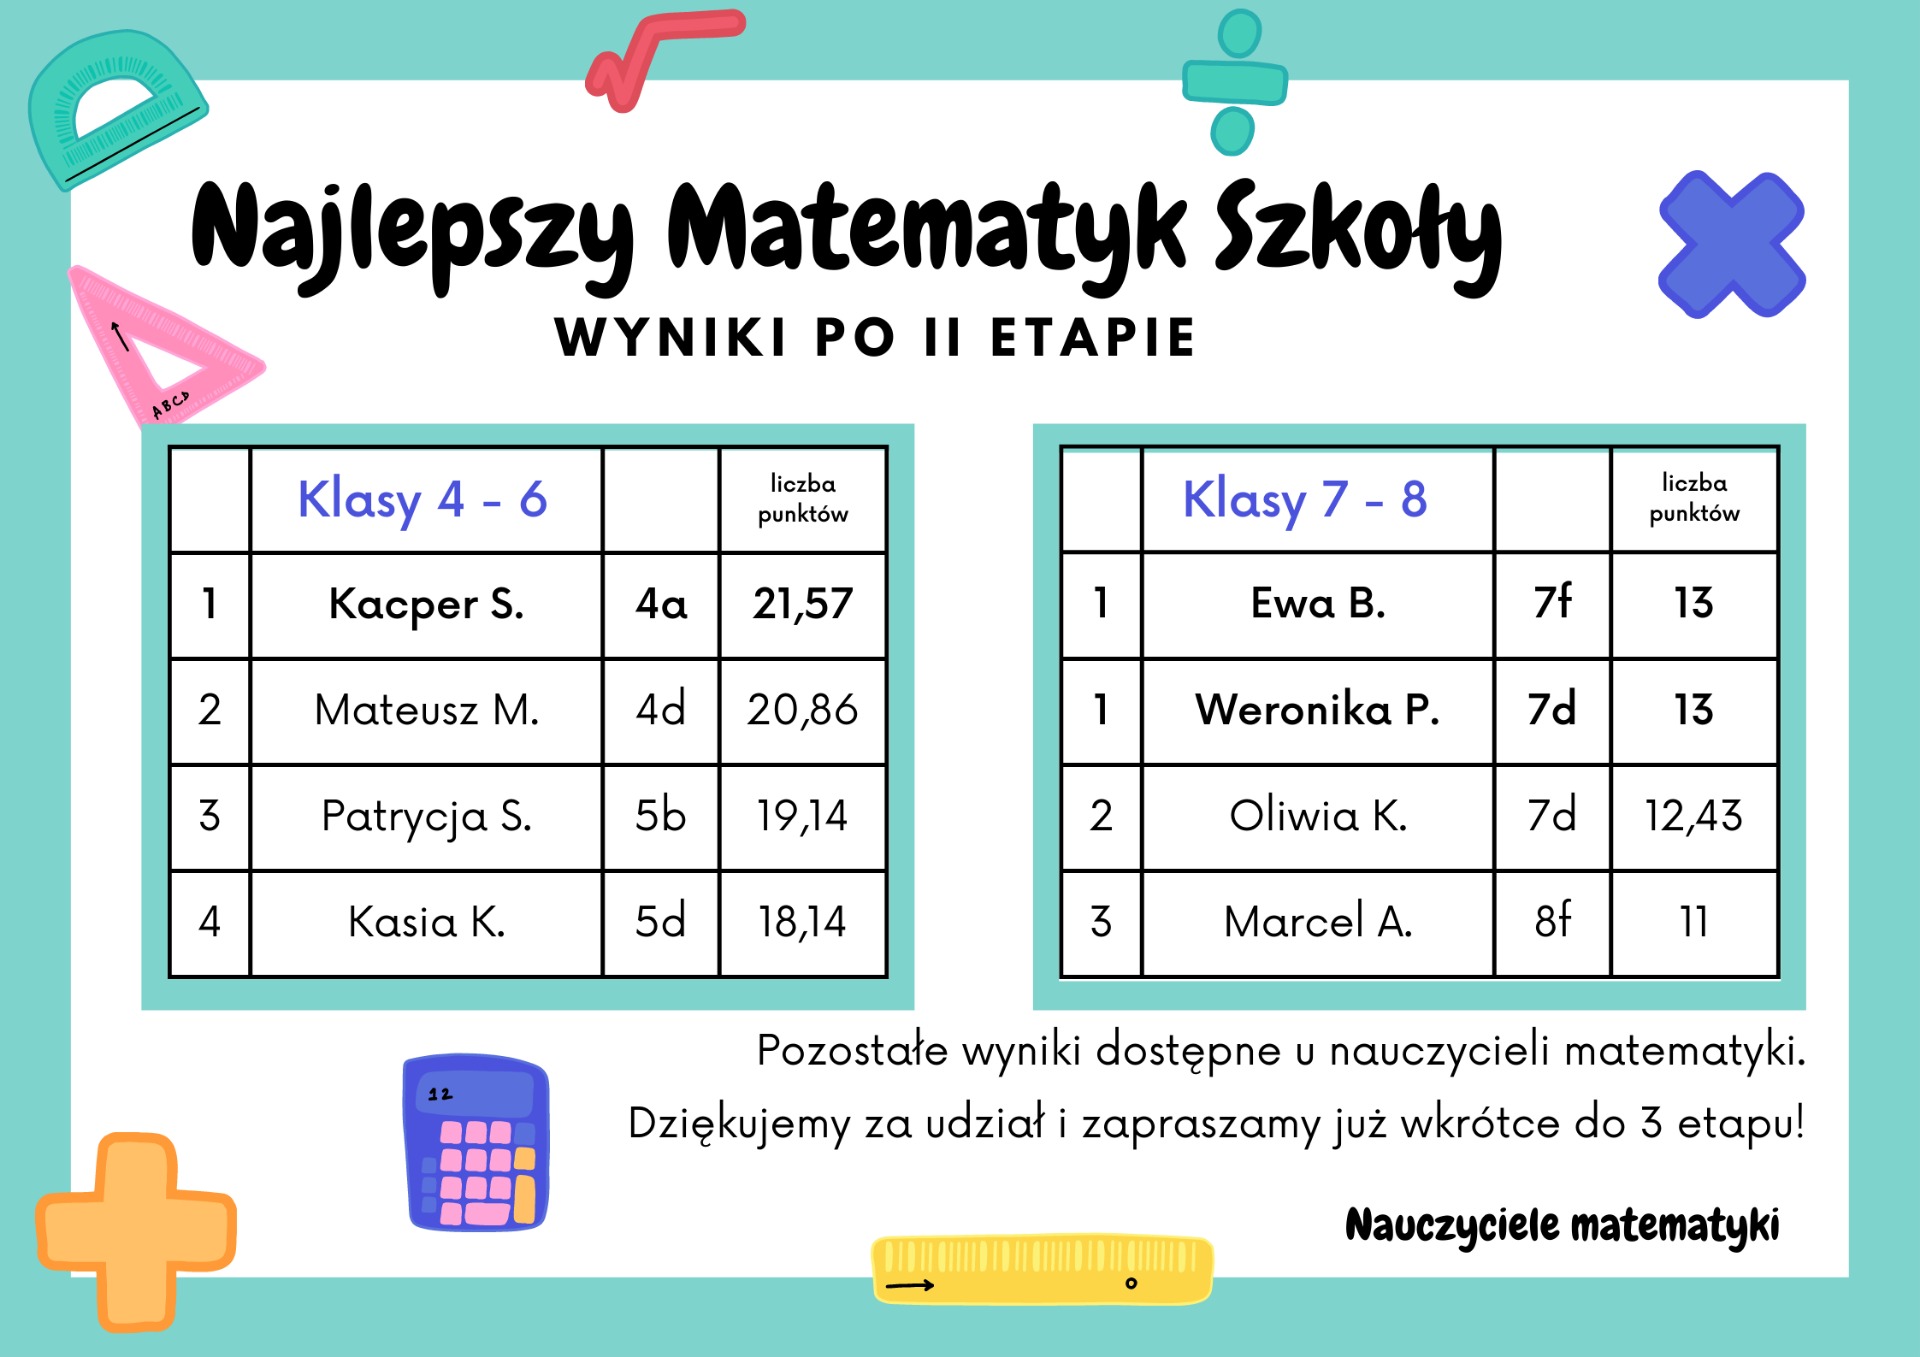 Najlepszy Matematyk Szkoły - wyniki po dwóch etapach konkursu - Obrazek 1